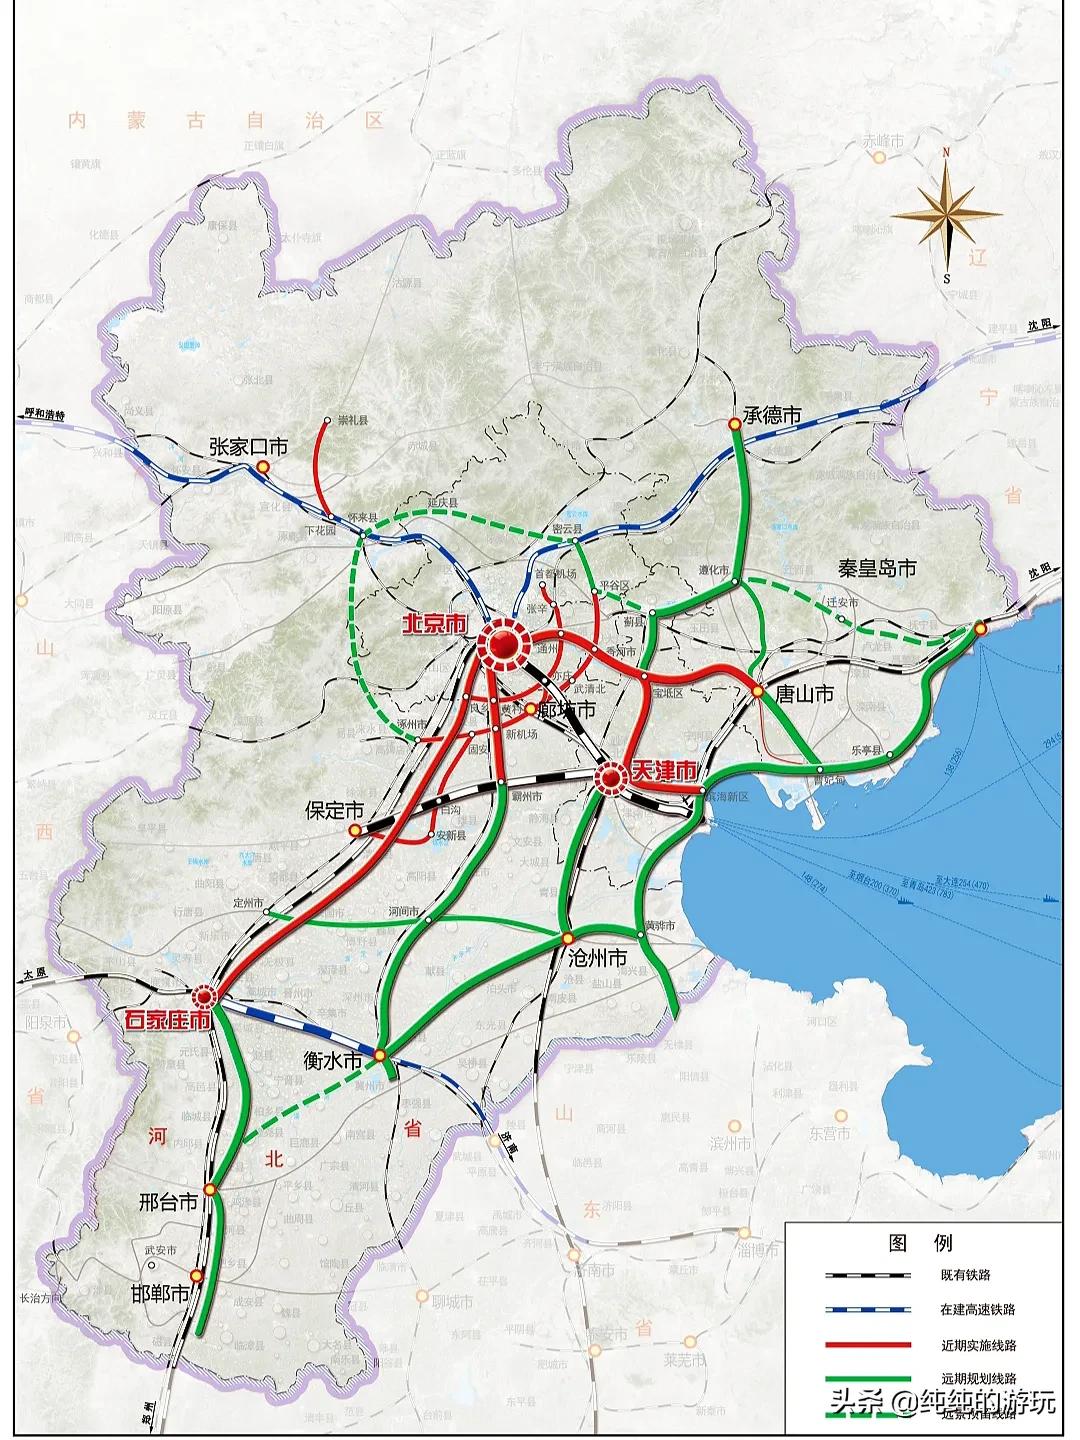 天津地铁线路图 天津2025年地铁规划图_华夏智能网